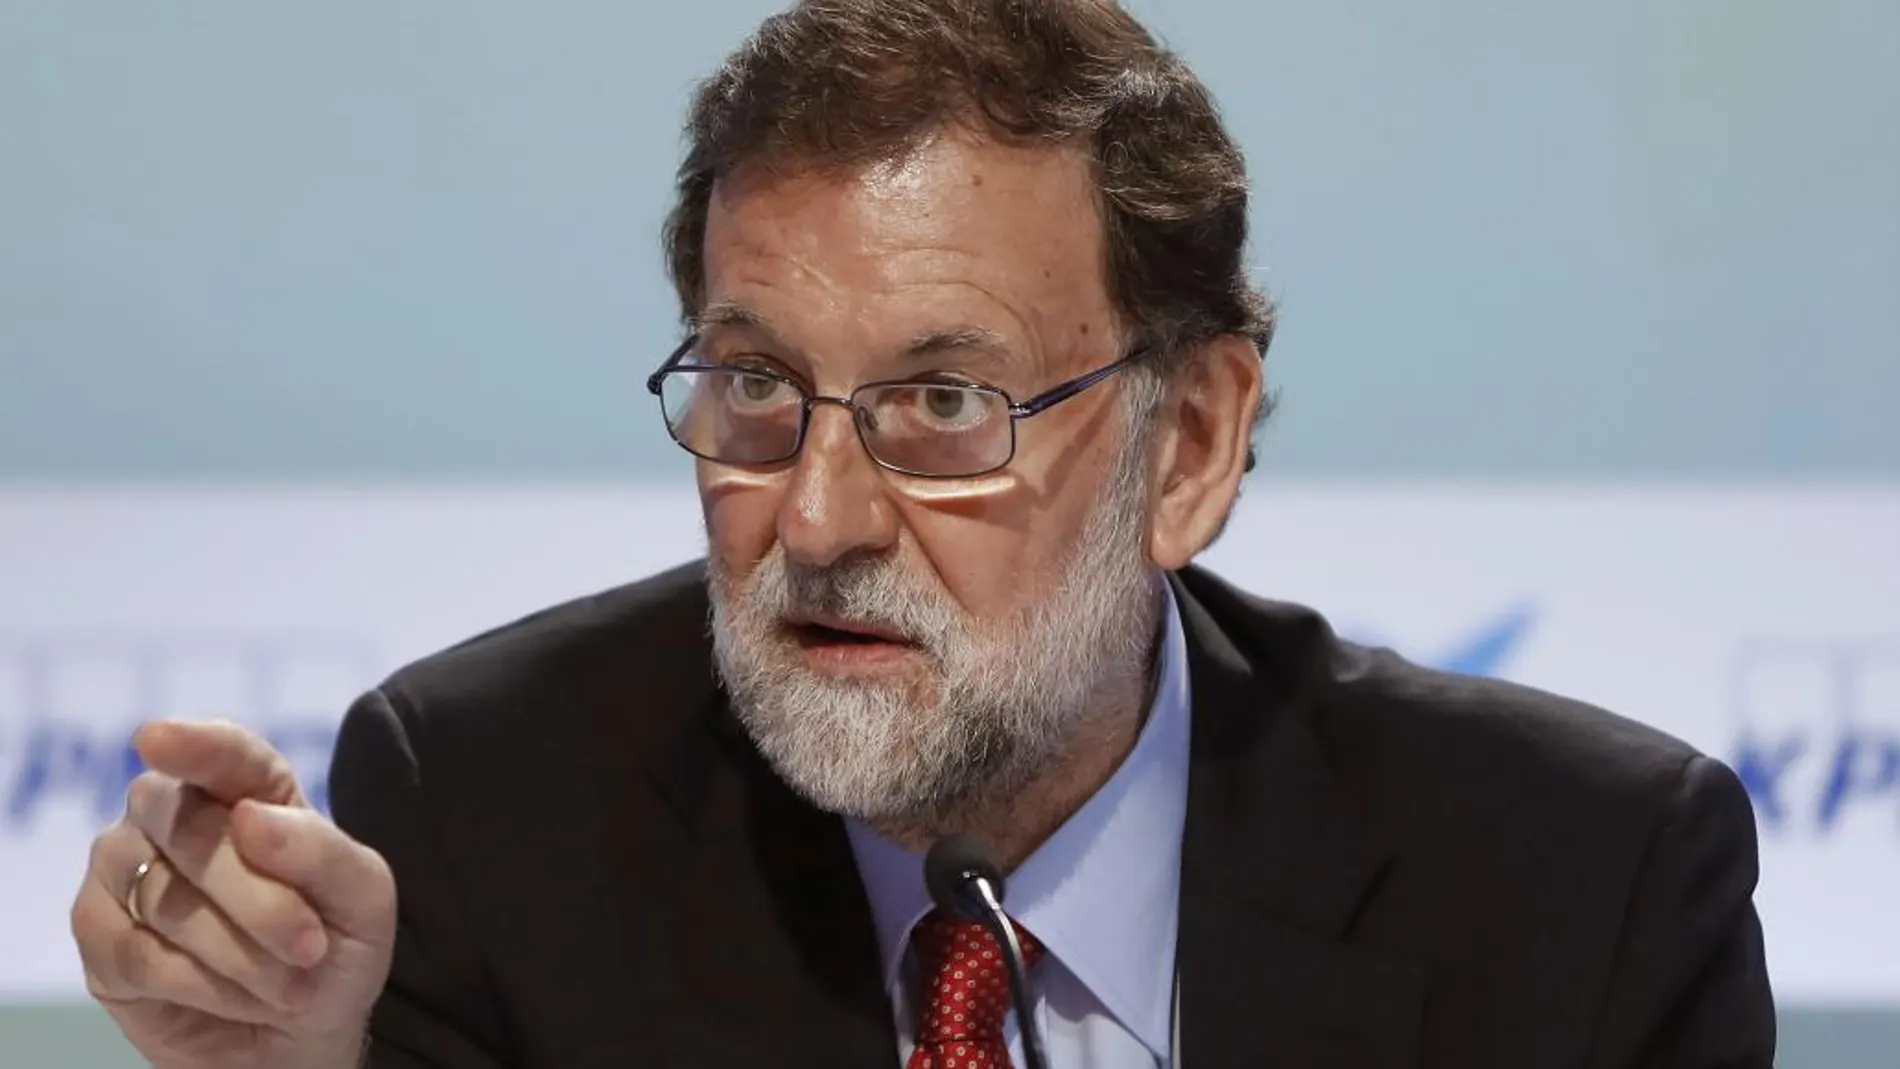 El presidente del Gobierno, Mariano Rajoy, durante su intervención hoy en la clausura de la XXXIII Reunión del Círculo de Economía de Sitges (Barcelona).